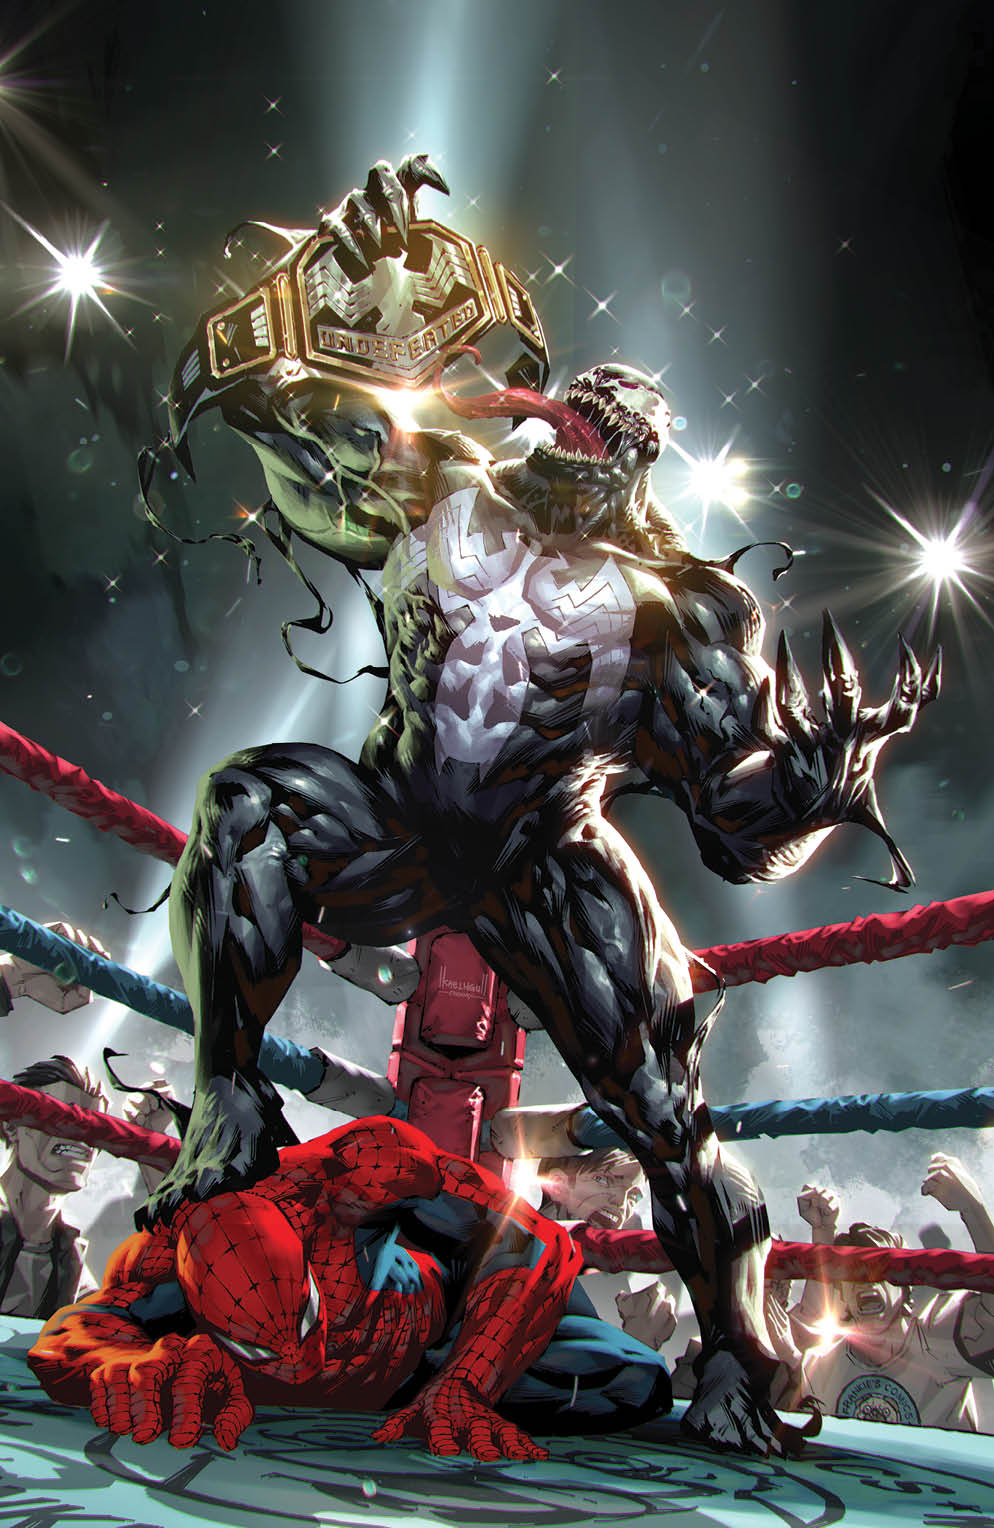 Venom #28 Kael Ngu Wrestling Belt Spider-Man Variant (09/23/2020) Marvel